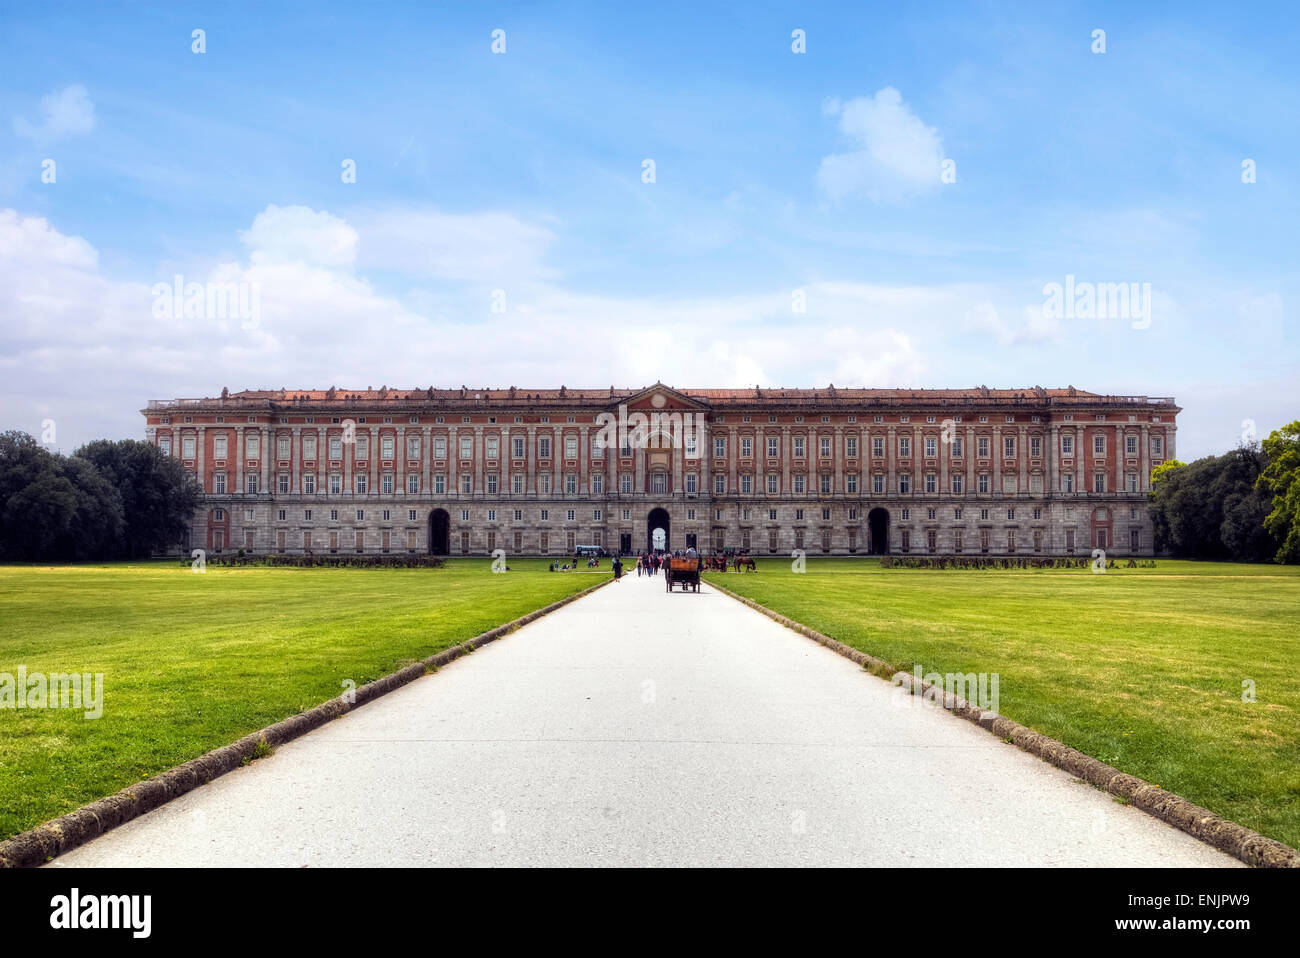 Royal Palace of Caserta, Caserta, Campania, Italy Stock Photo